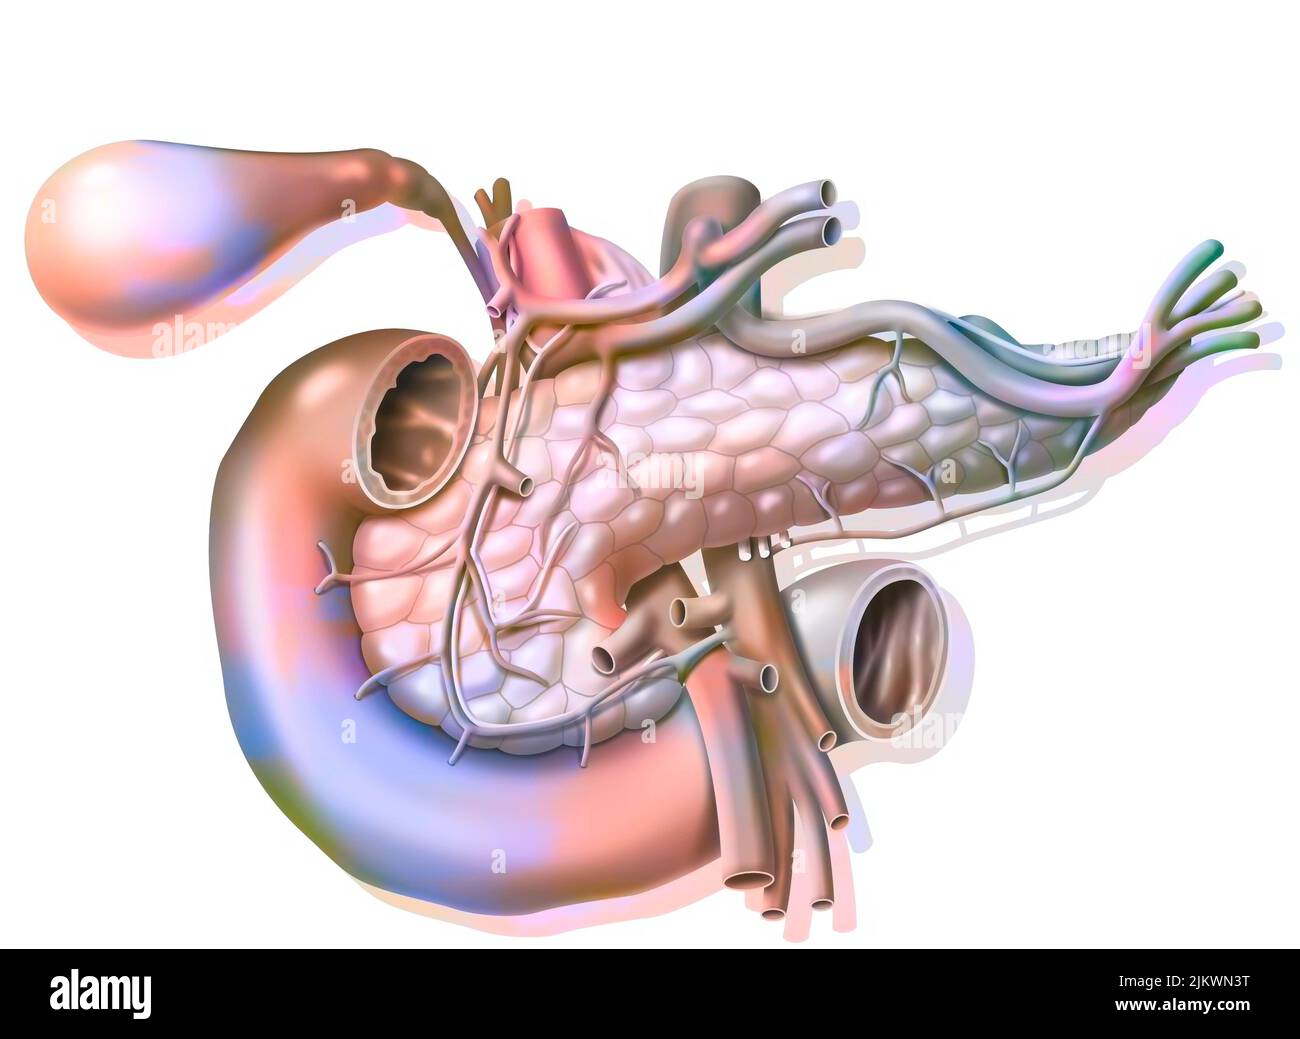 Vaskularisierung der Bauchspeicheldrüse in der anterioren Ansicht mit Vesikel und gemeinsamem Gallengang. Stockfoto